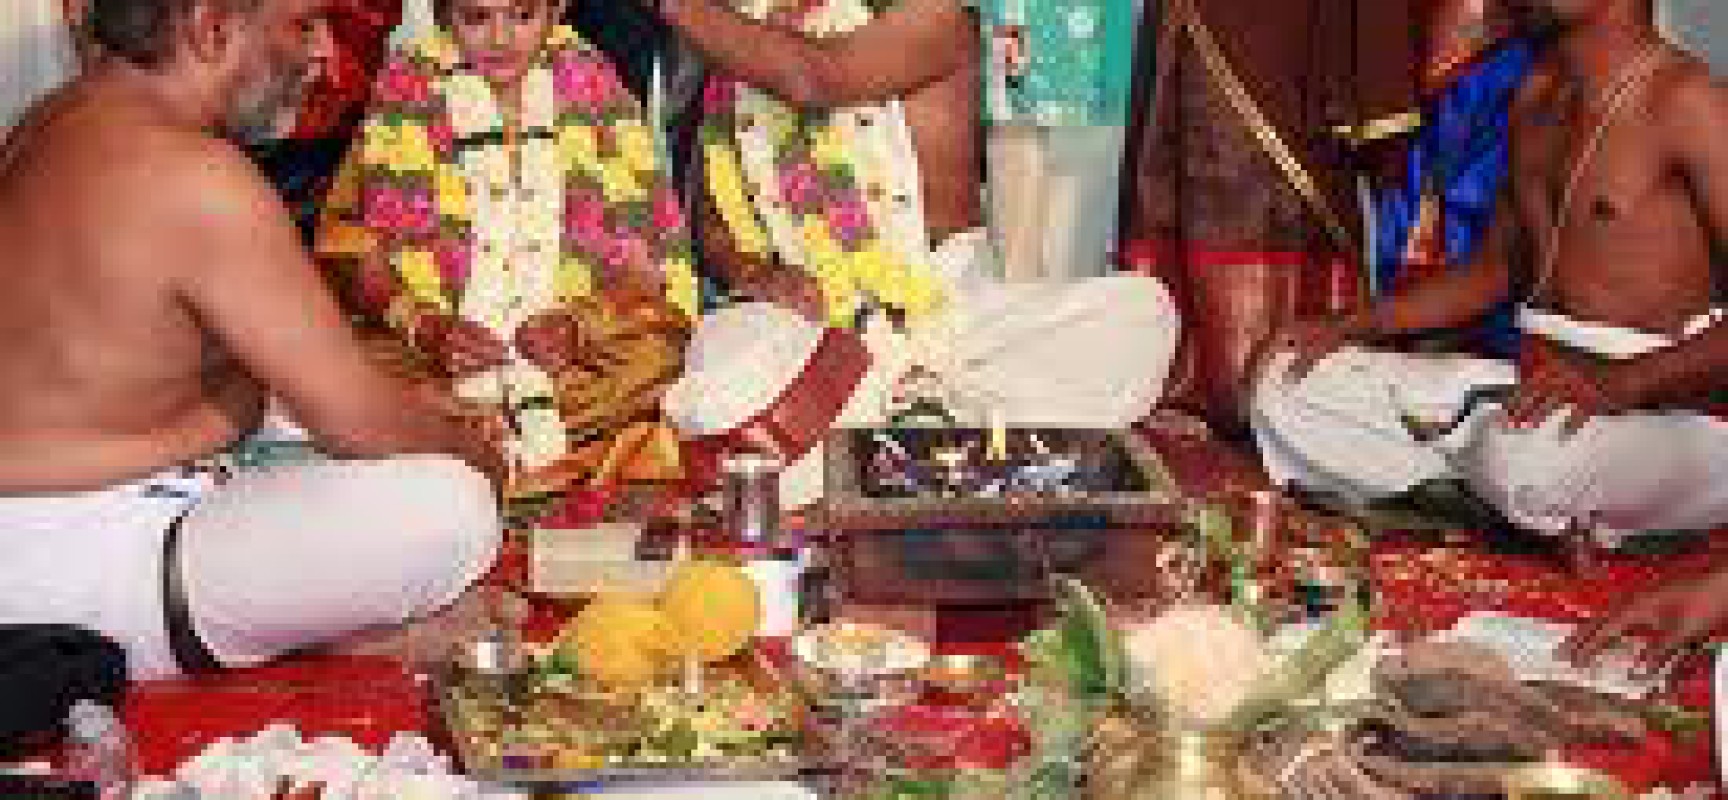 The Brahmin Weddings